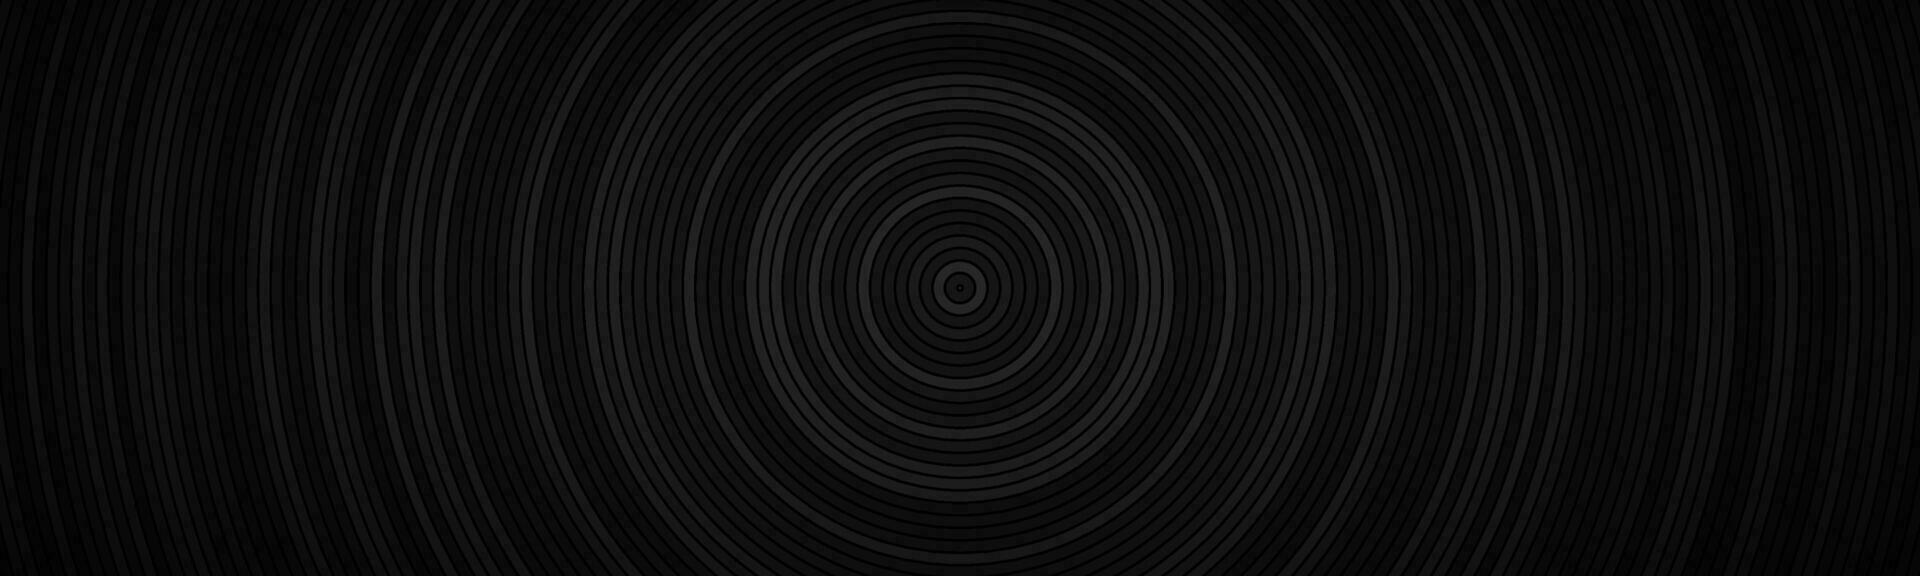 intestazione del cerchio astratto scuro. cerchi neri con diverse trasparenze e banner sfumato scuro. sfondo semplice motivo geometrico vettore